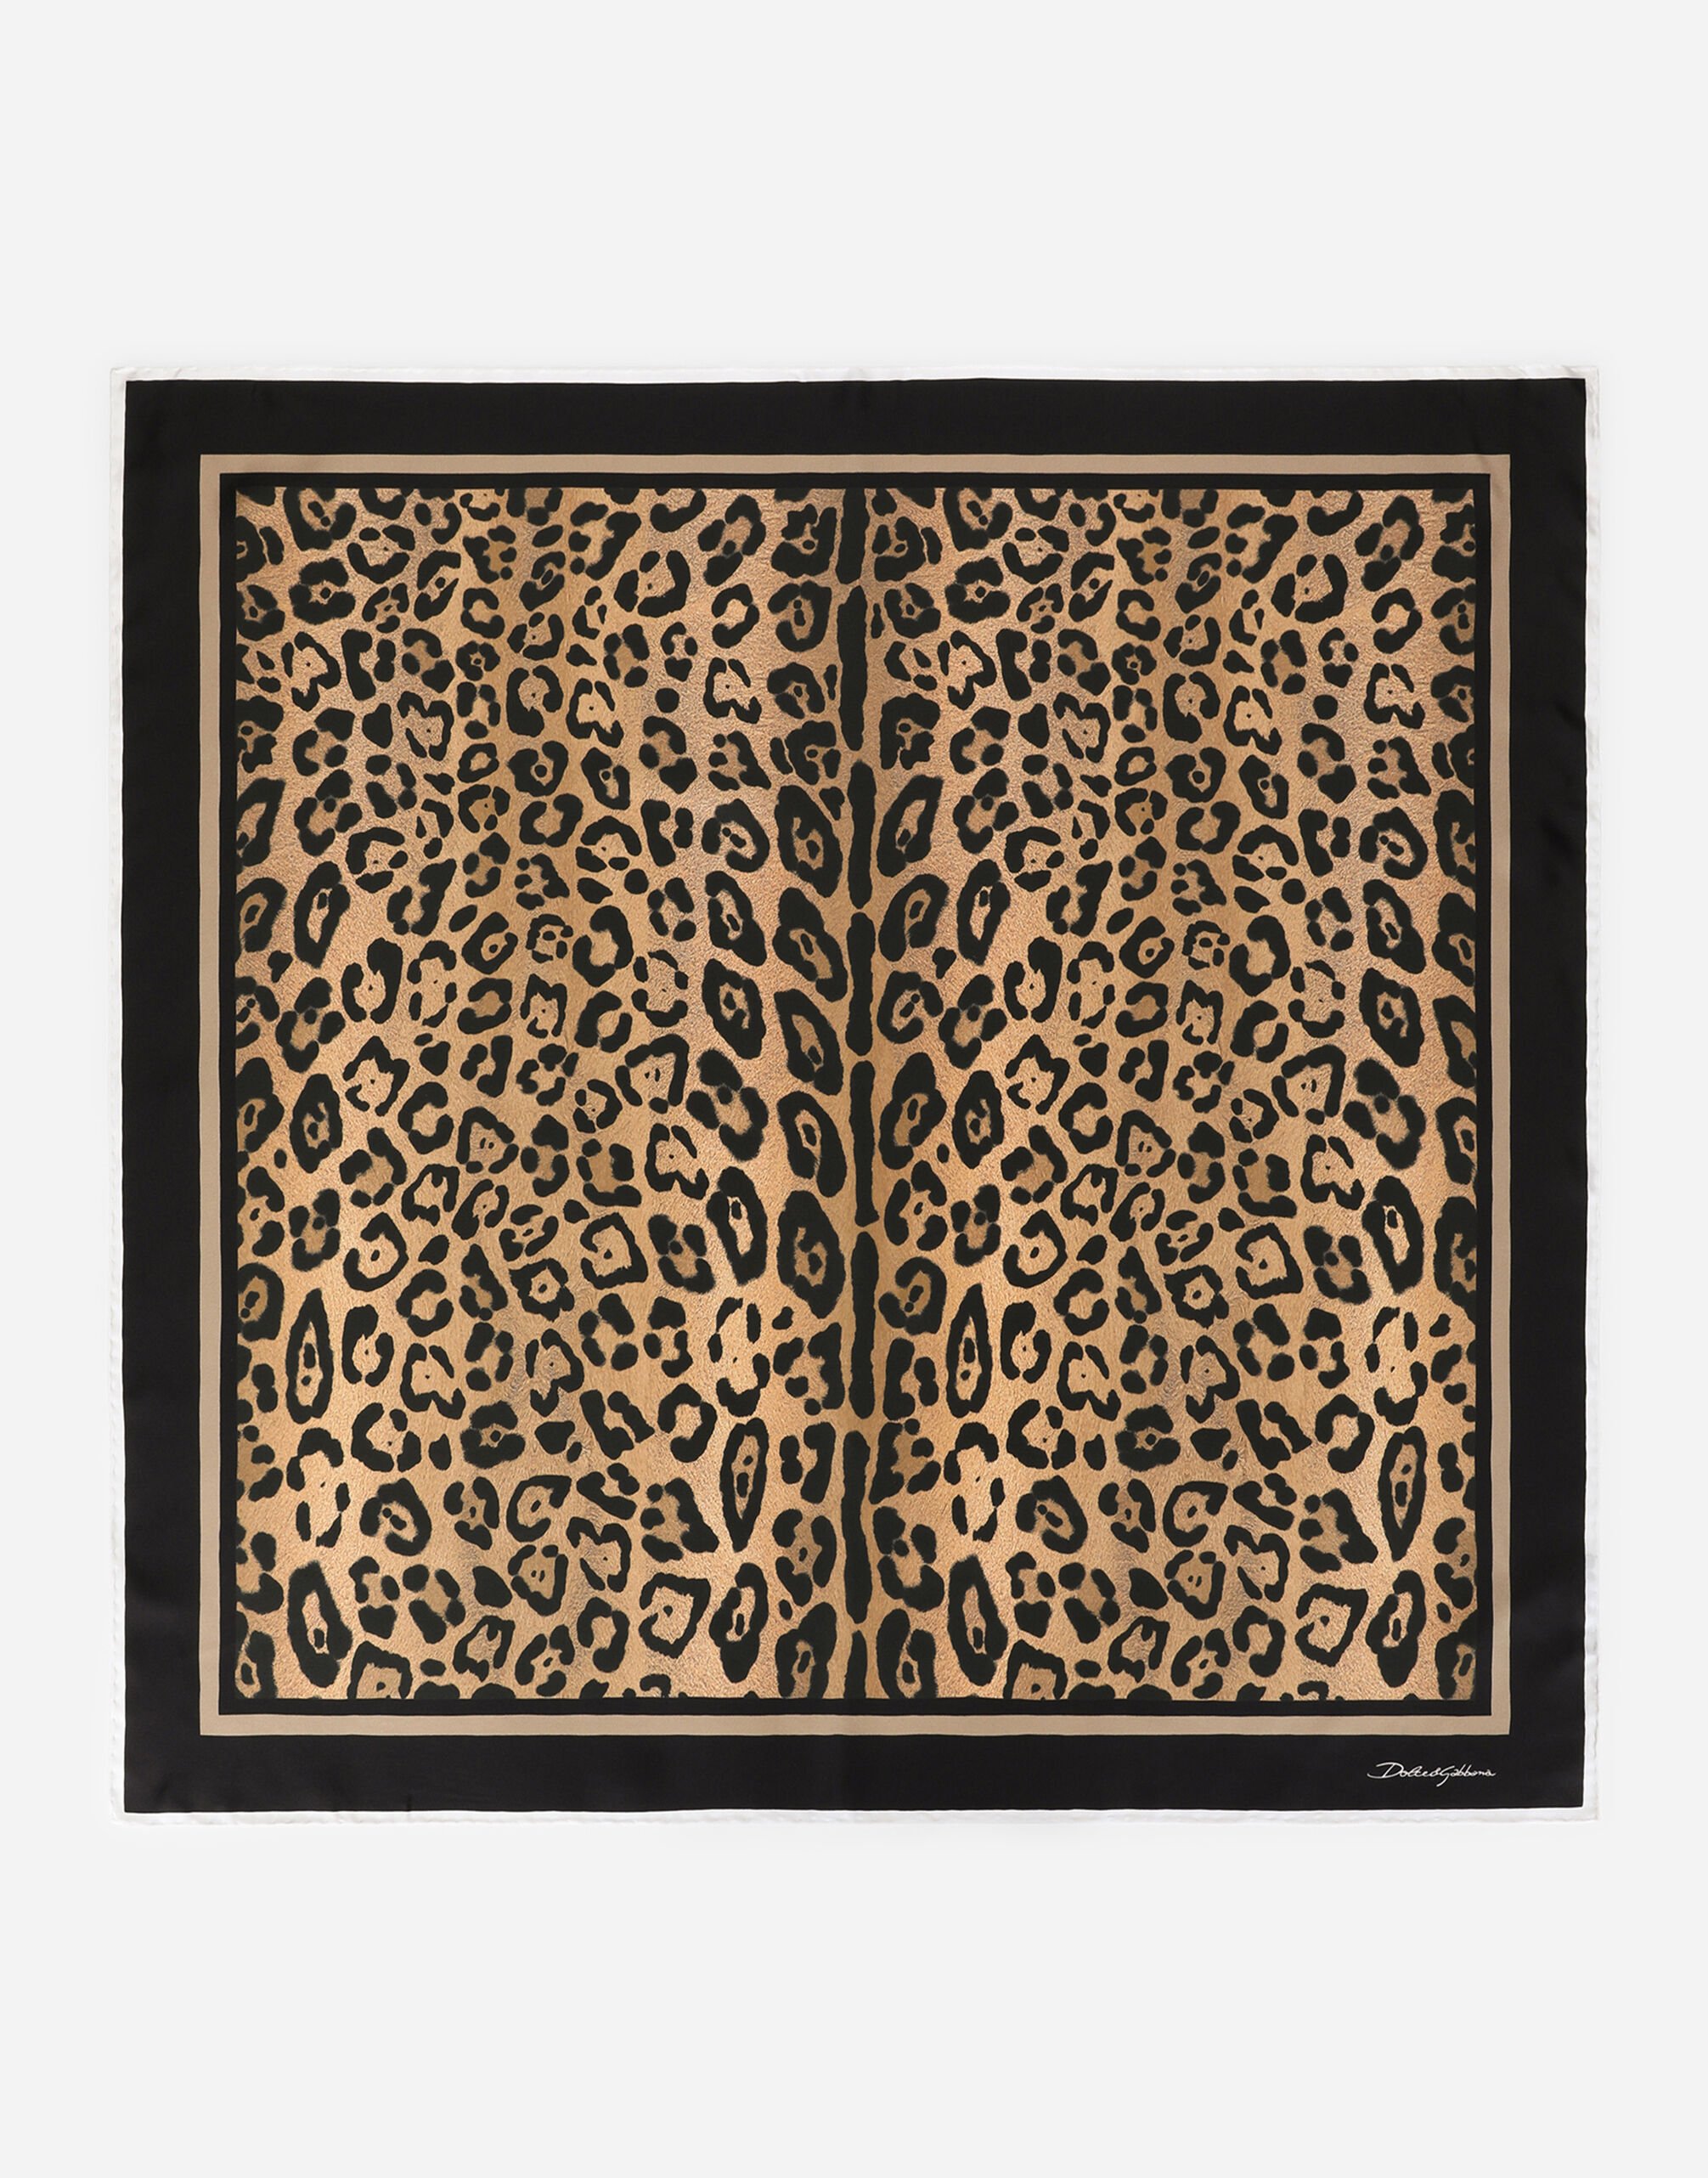 Dolce & Gabbana Fular 90 x 90 en sarga estampado leopardo Estampado Animalier BE1446AM568